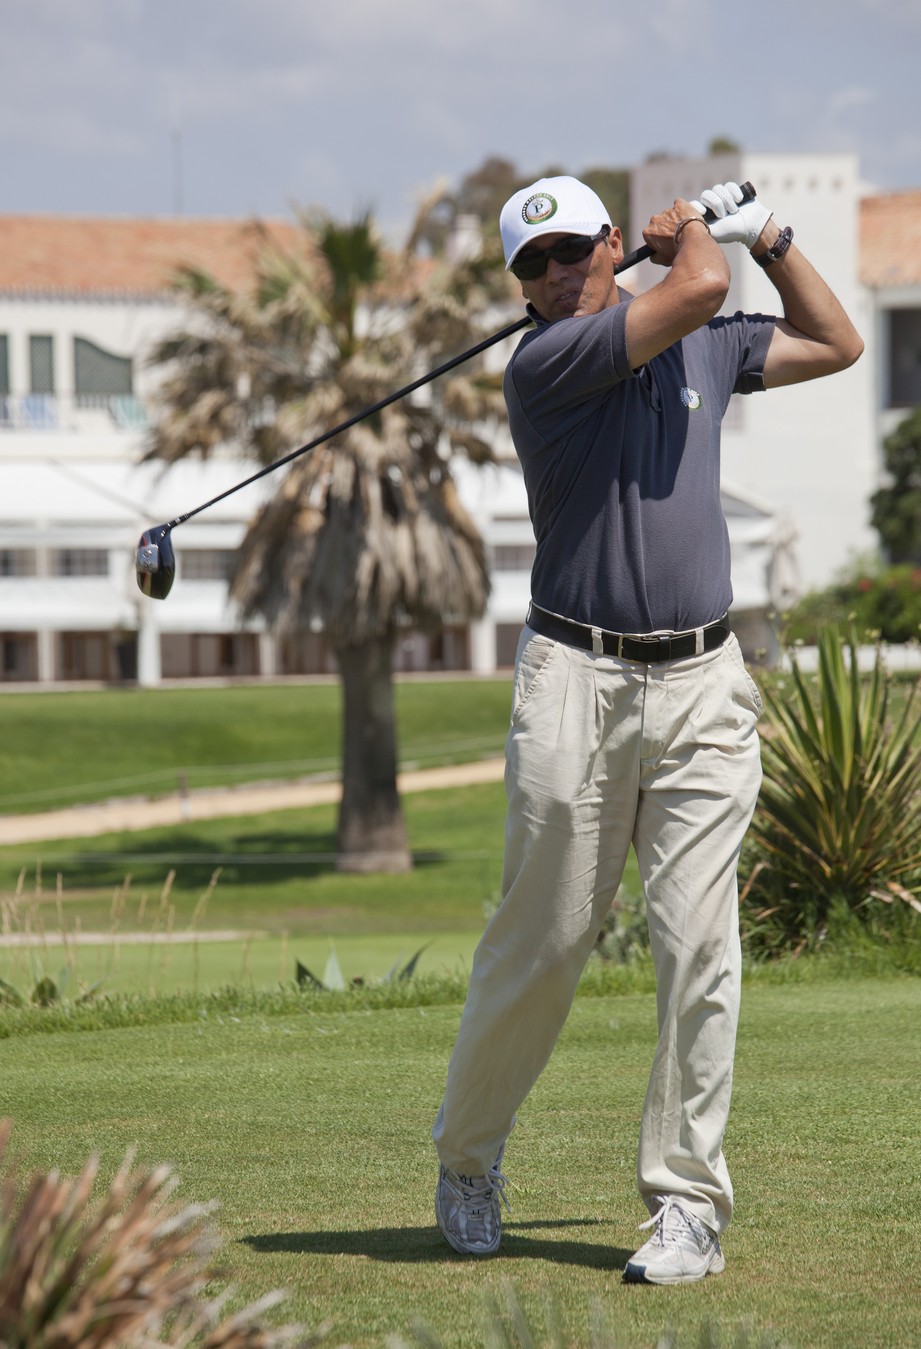 Parador de Málaga Golf